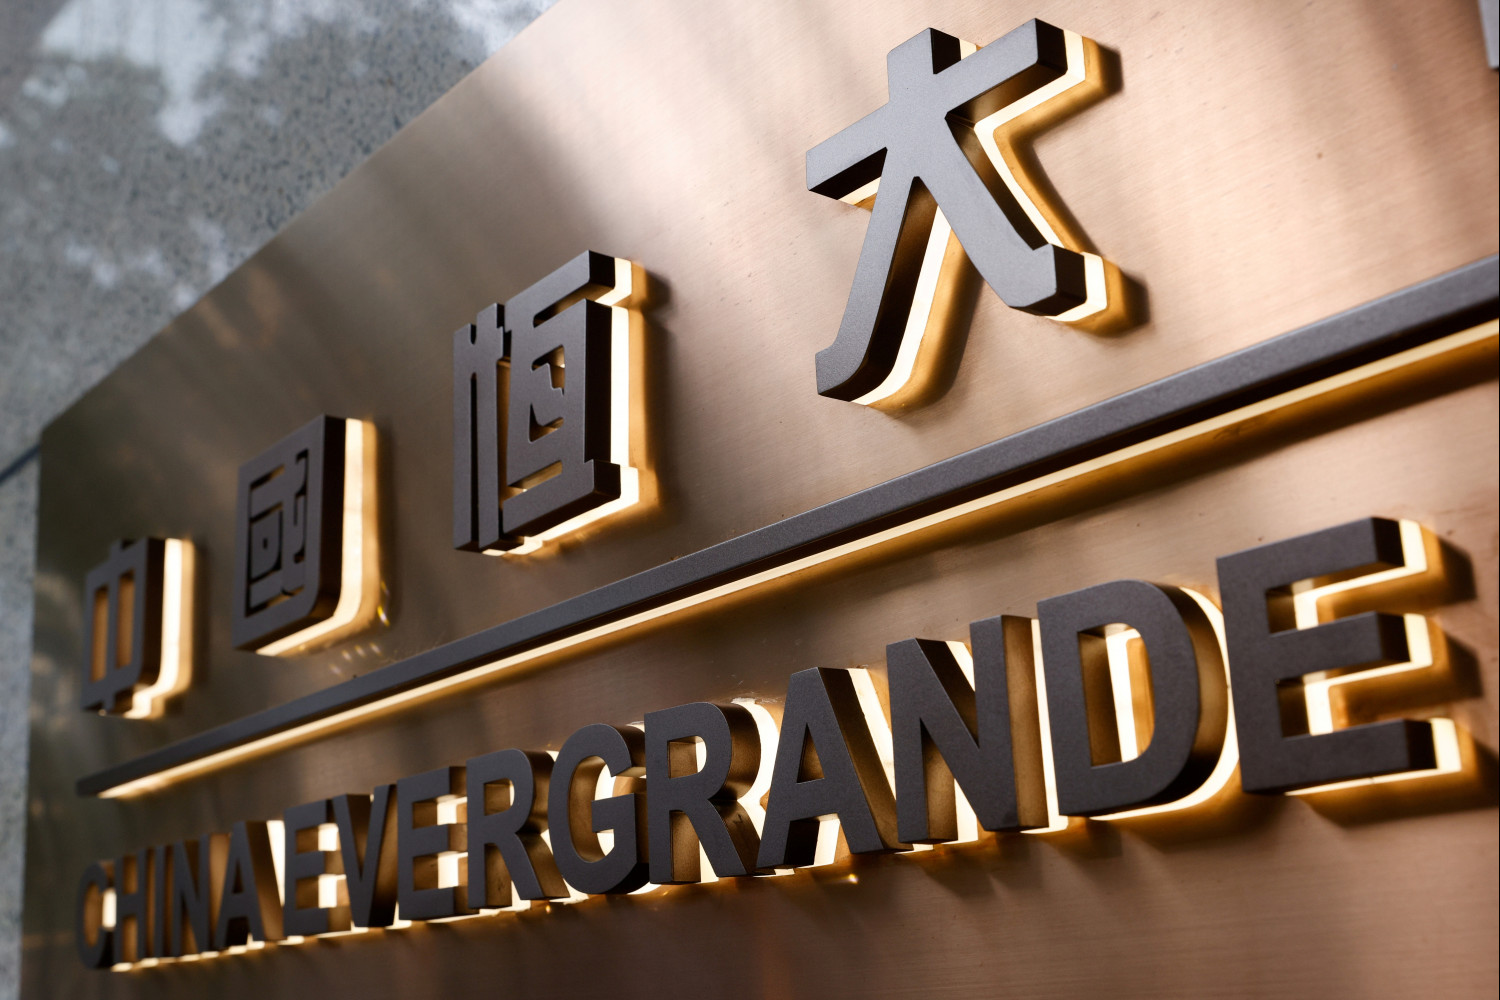 La Bolsa Hong Kong eliminará a Evergrande de su índice de empresas chinas